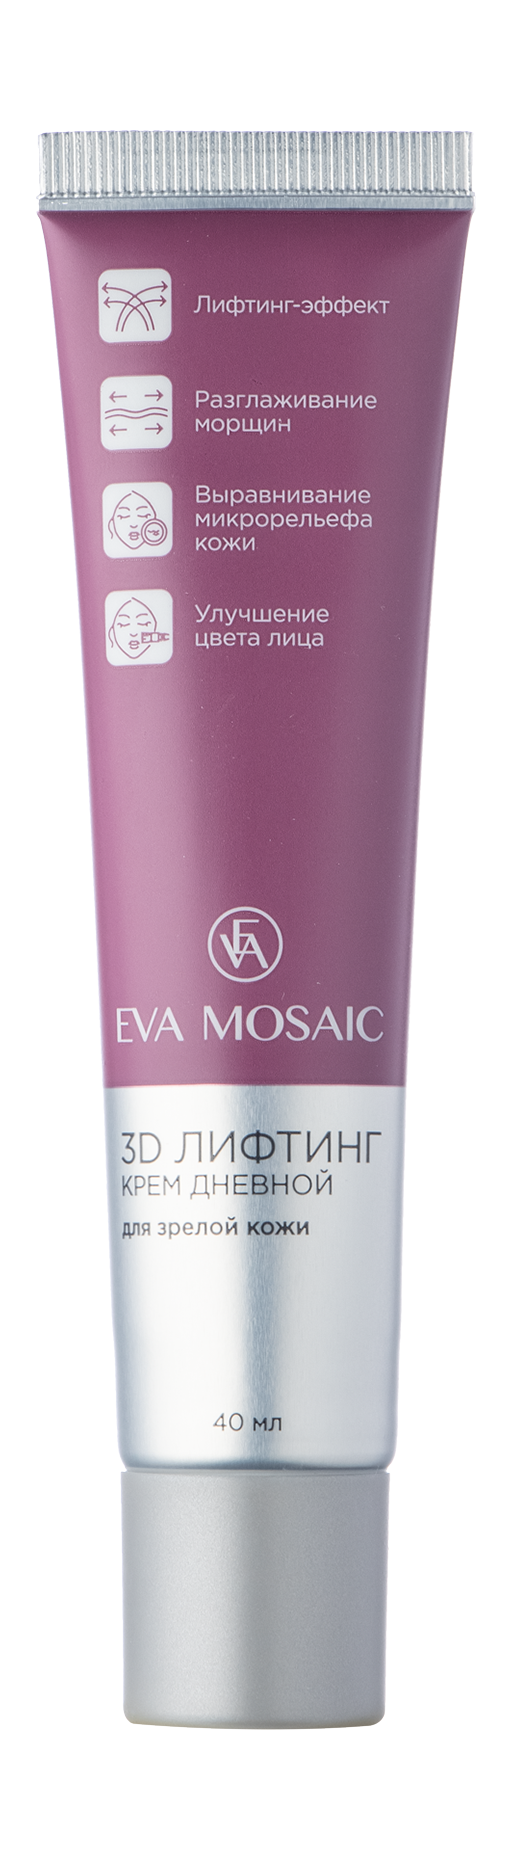 EVA MOSAIC Крем дневной для зрелой кожи 3D лифтинг, 40 мл